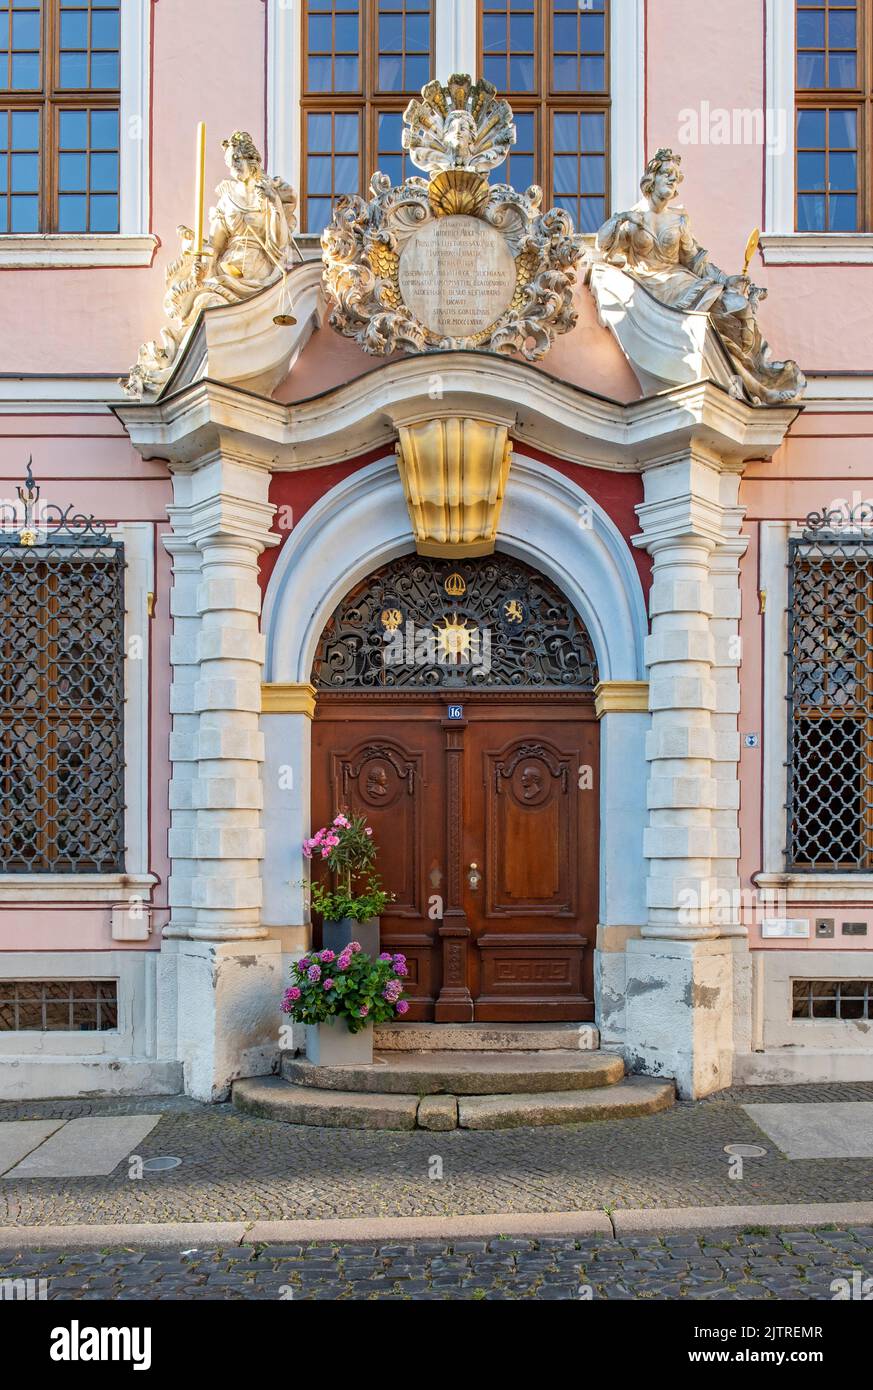 Portal of Hotel Börse, Untermarkt, Görlitz, Germany Stock Photo